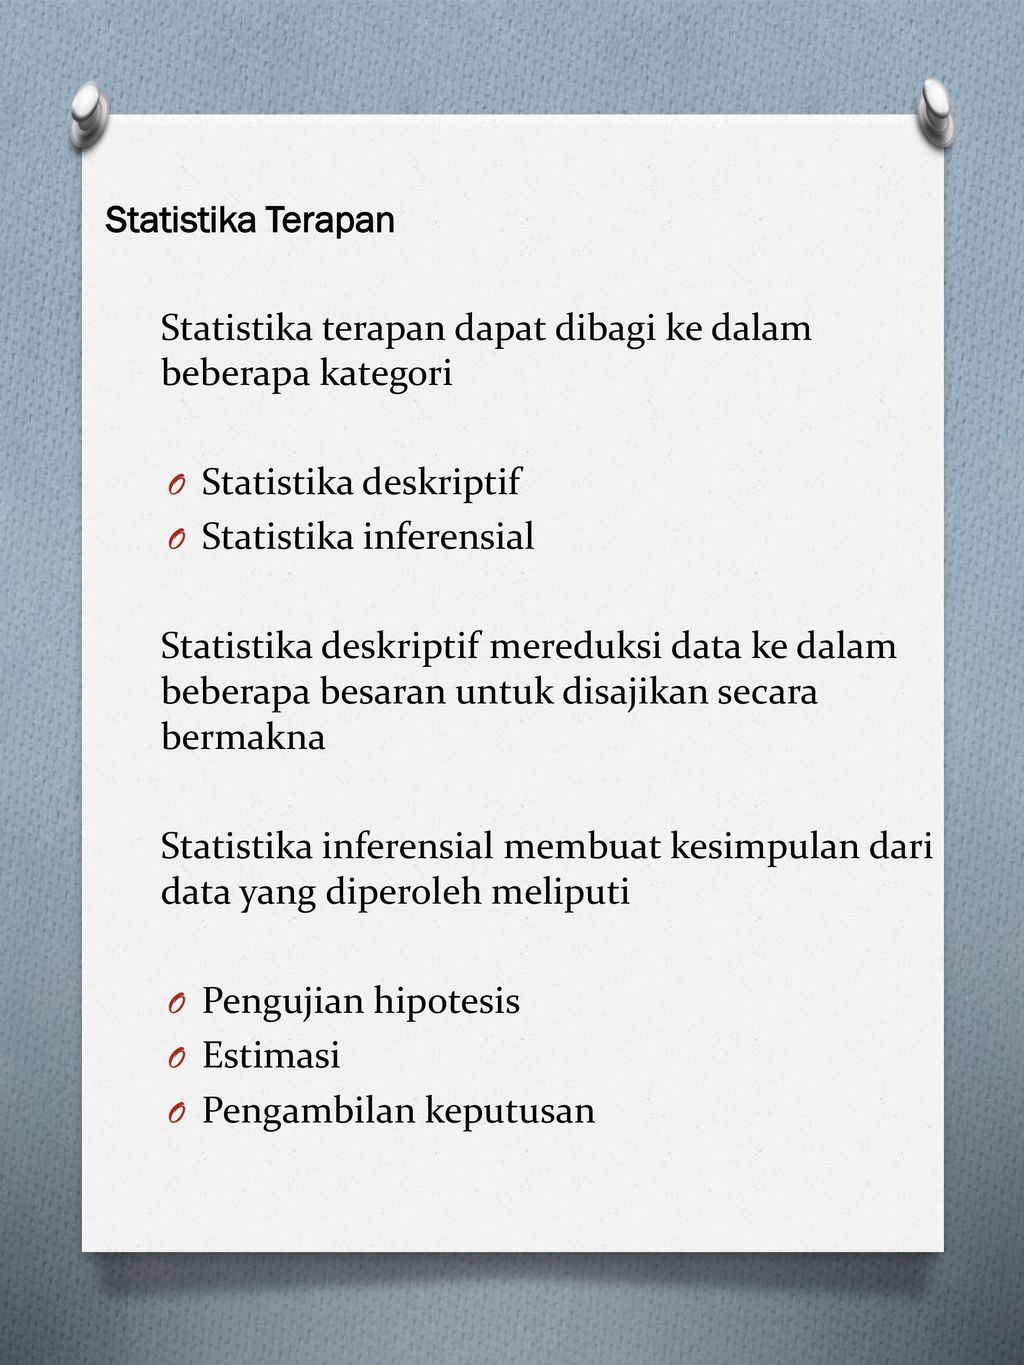 Statistika terapan dapat dibagi ke dalam beberapa kategori